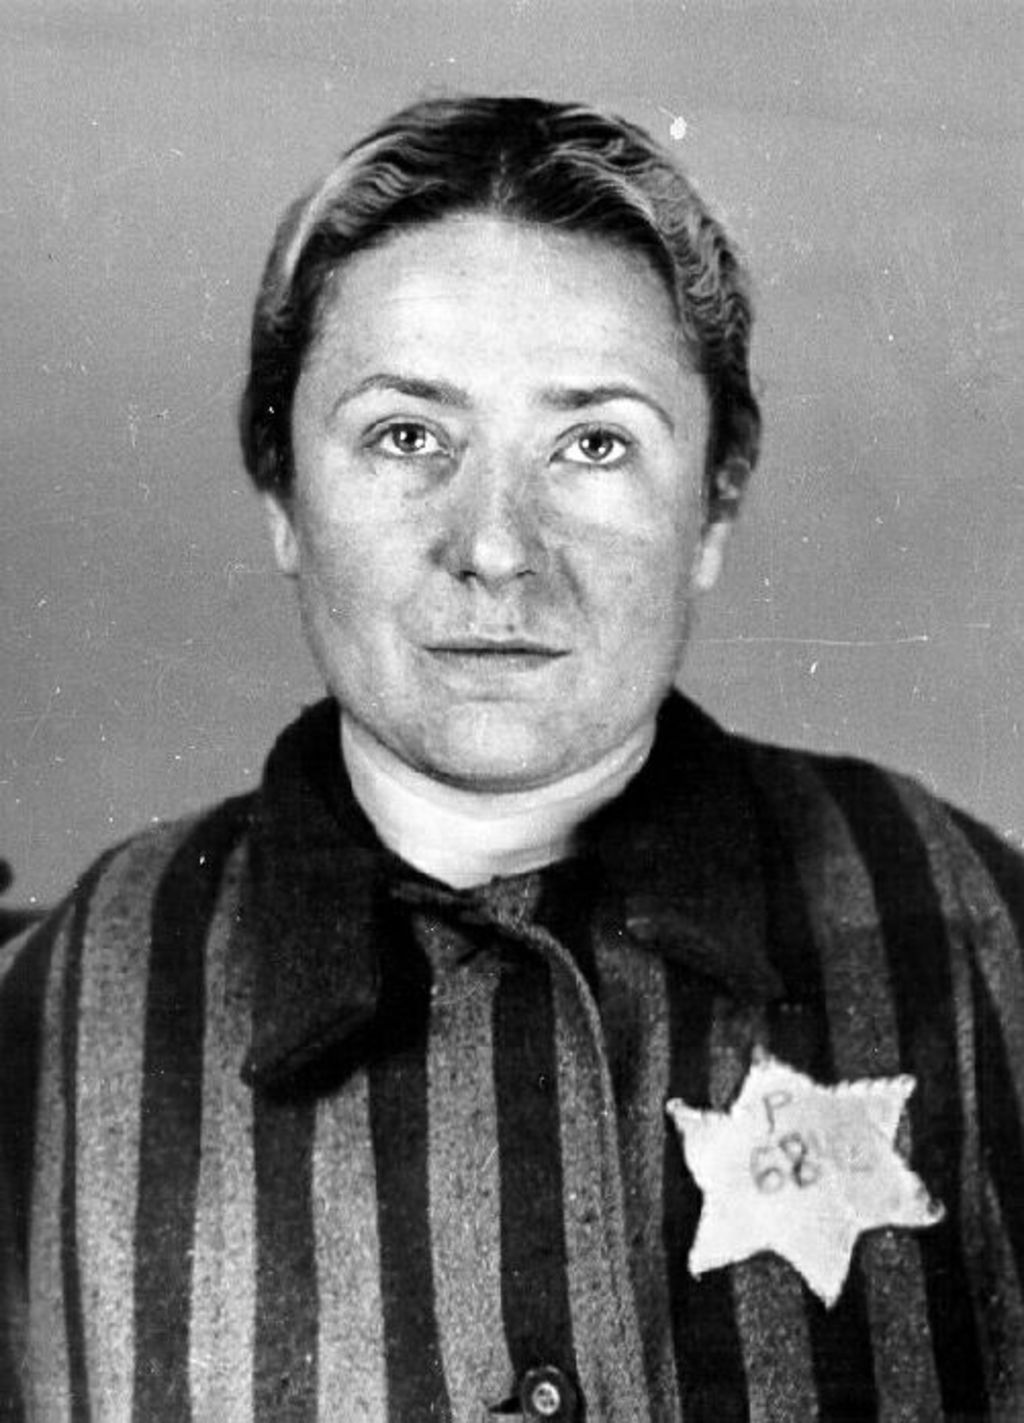 Exponat: Foto: Erfassungsfoto aus dem KZ Auschwitz, 1942